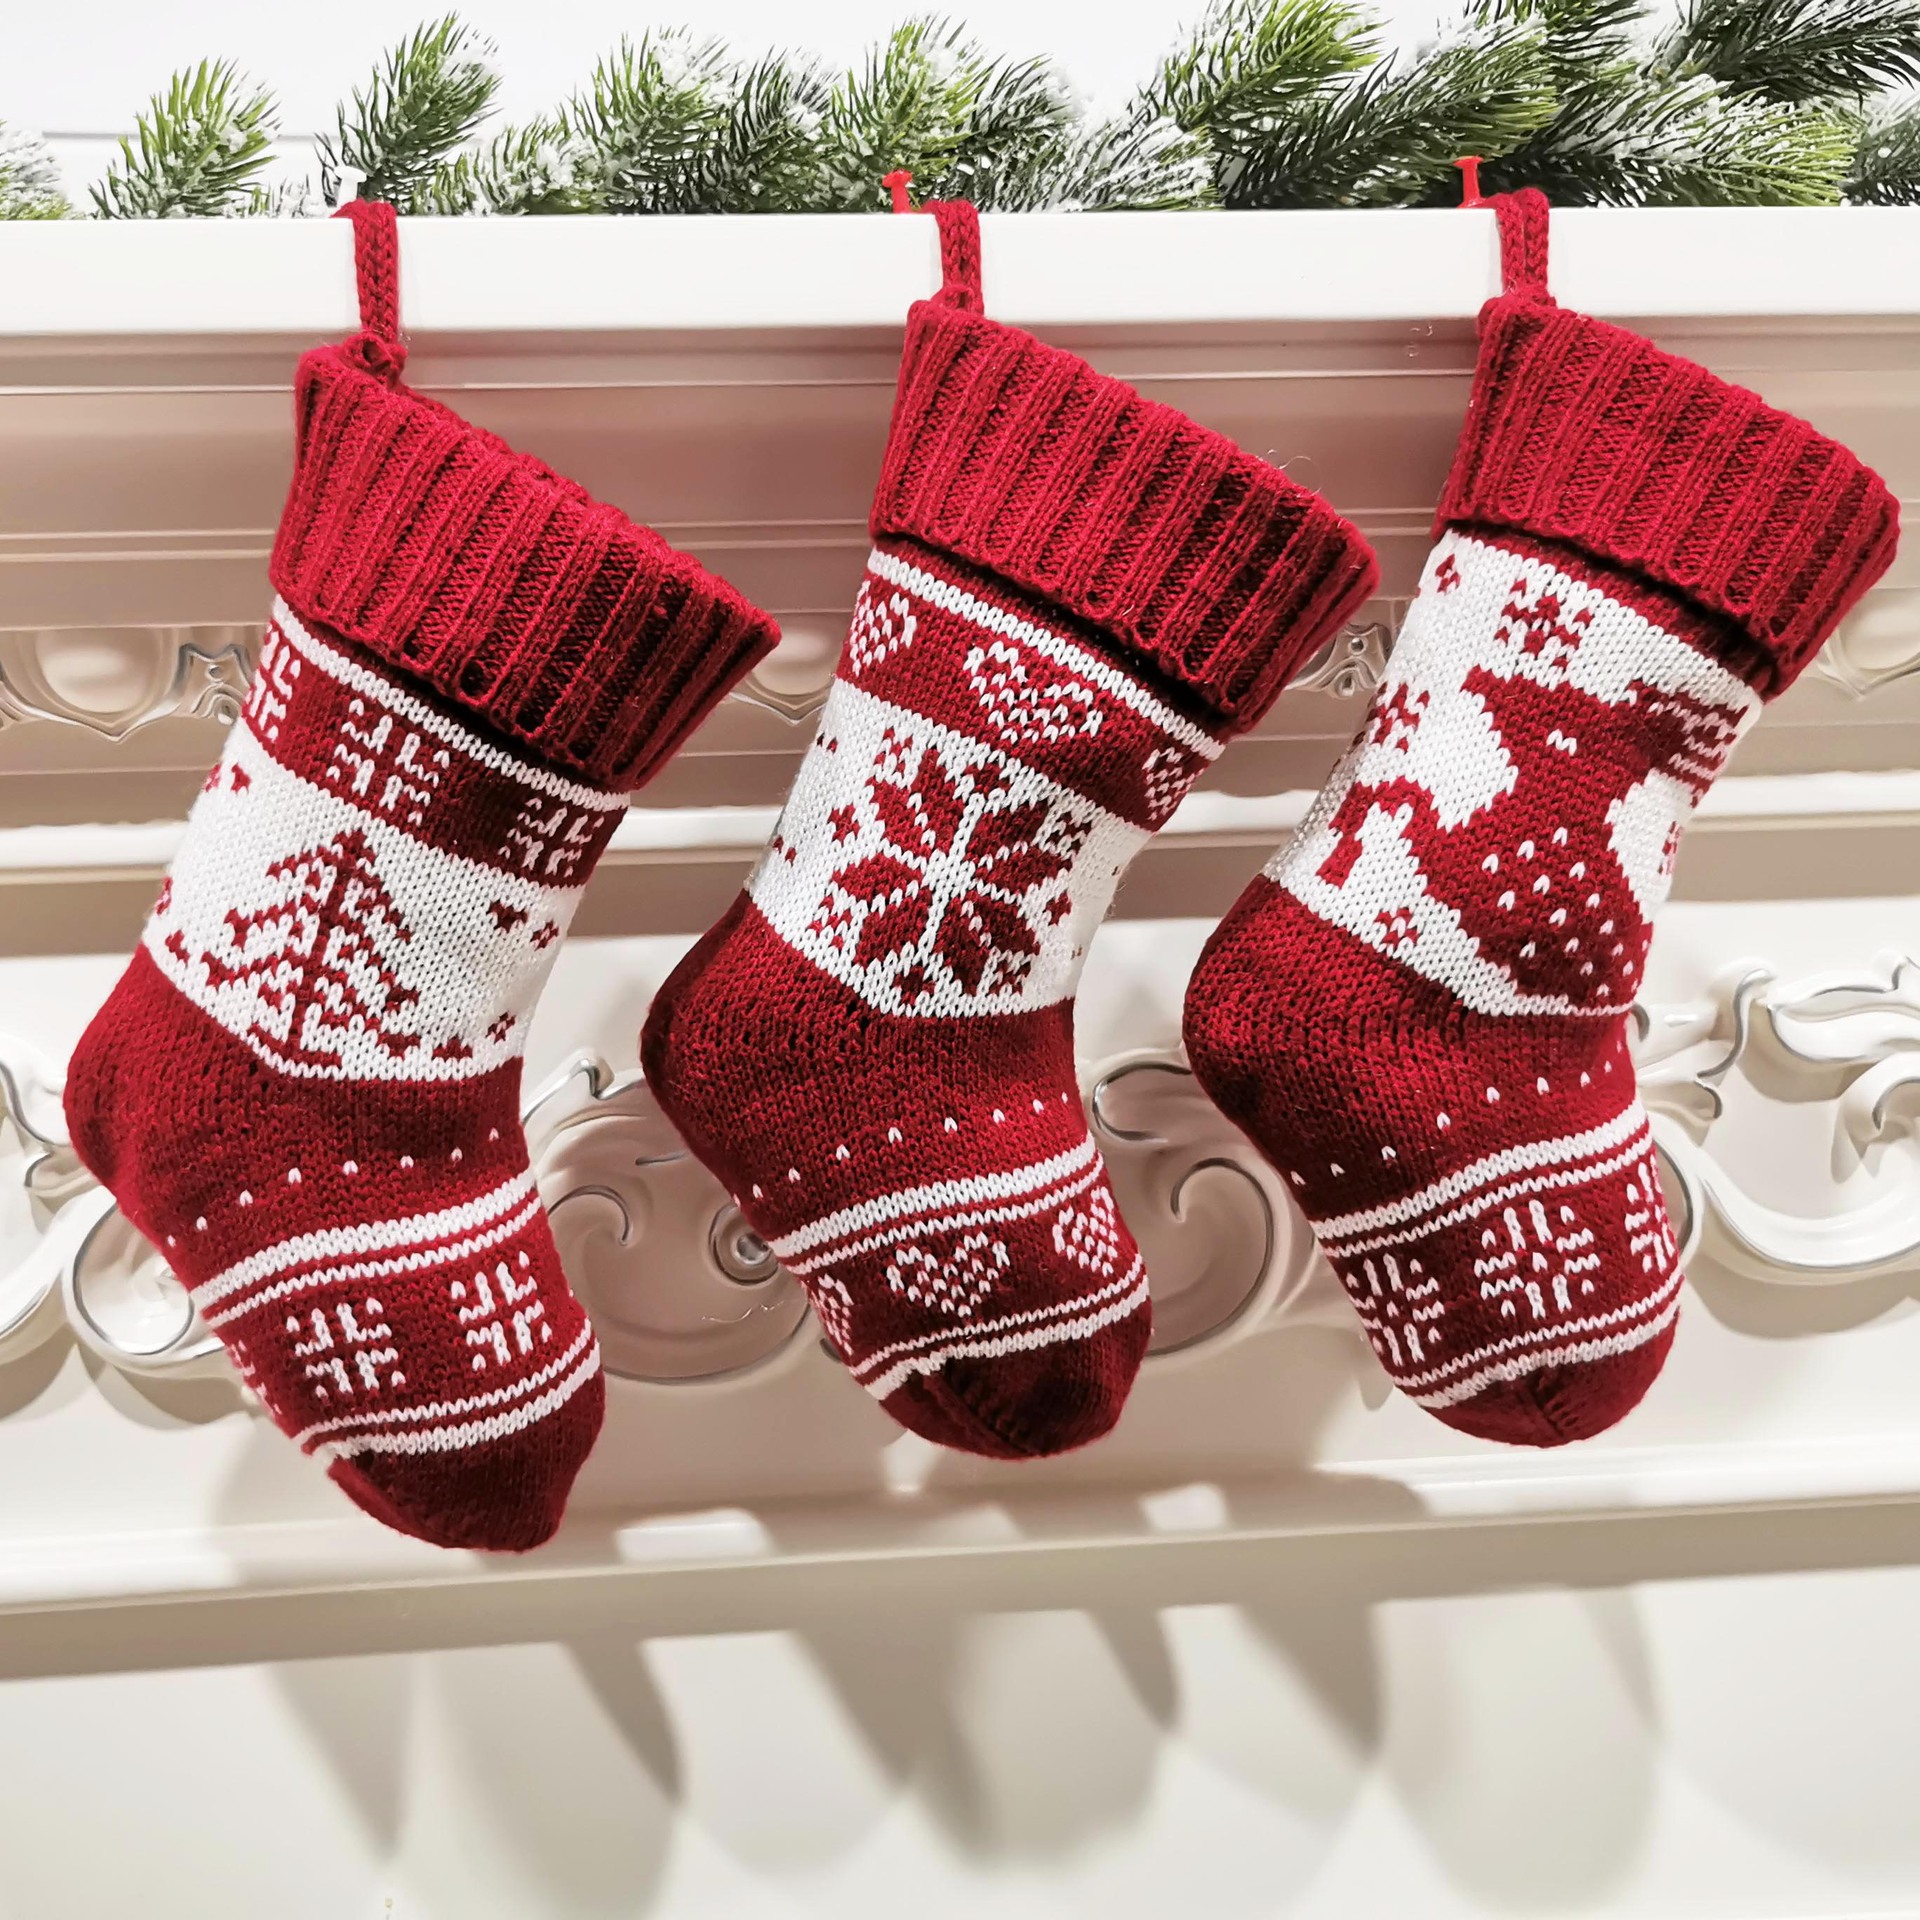 Custom Embroidered Christmas Stockings in Bulk